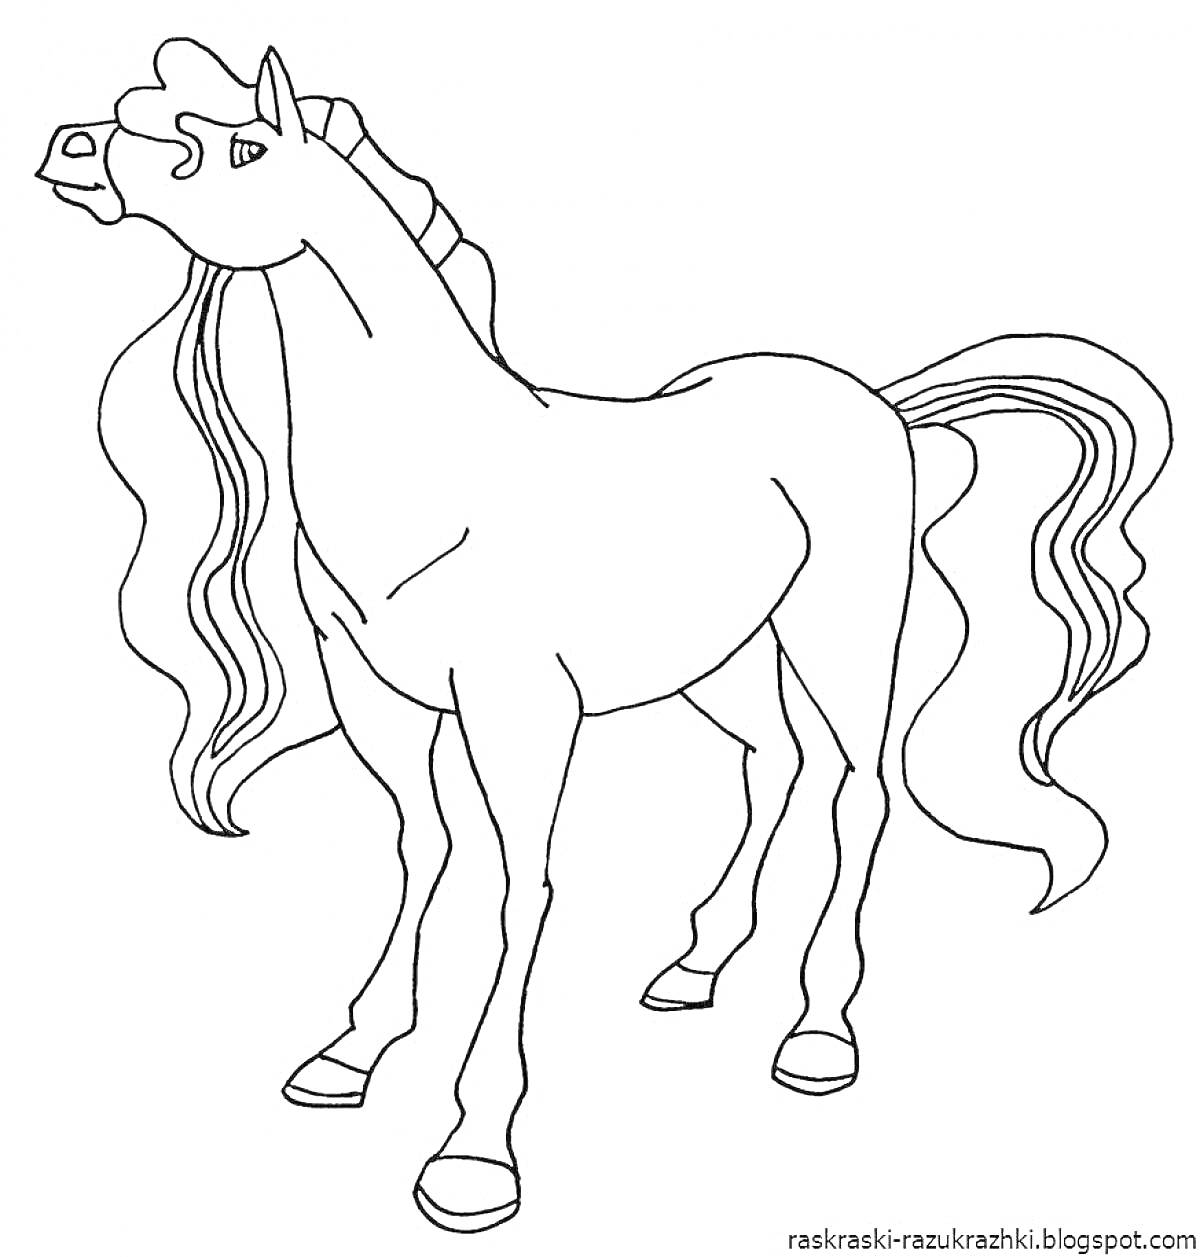 Раскраска Лошадка с длинной гривой и хвостом, смотрящая в сторону